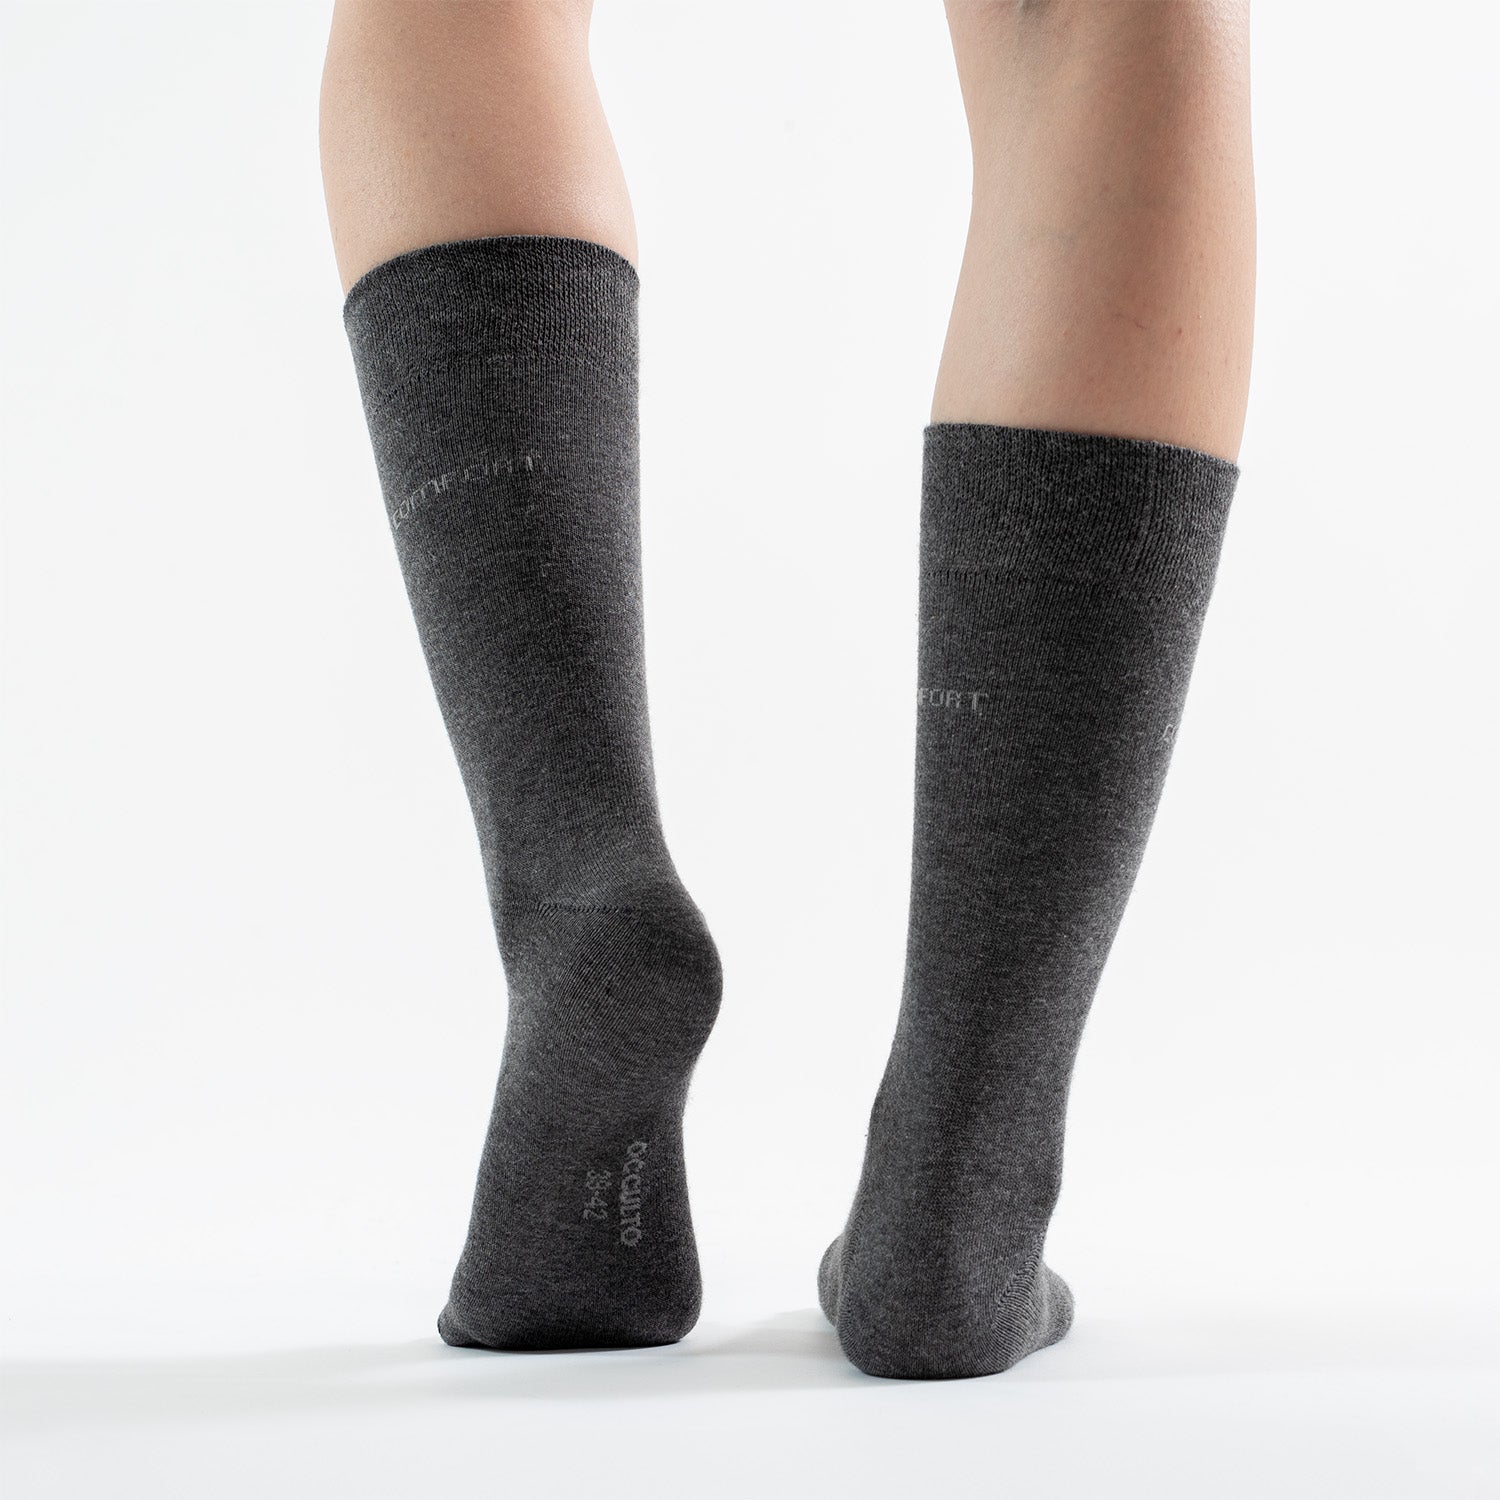 Damen Komfort Socken ohne Gummibund ohne Naht aus Baumwolle 6er Pack (Modell: Gabi)